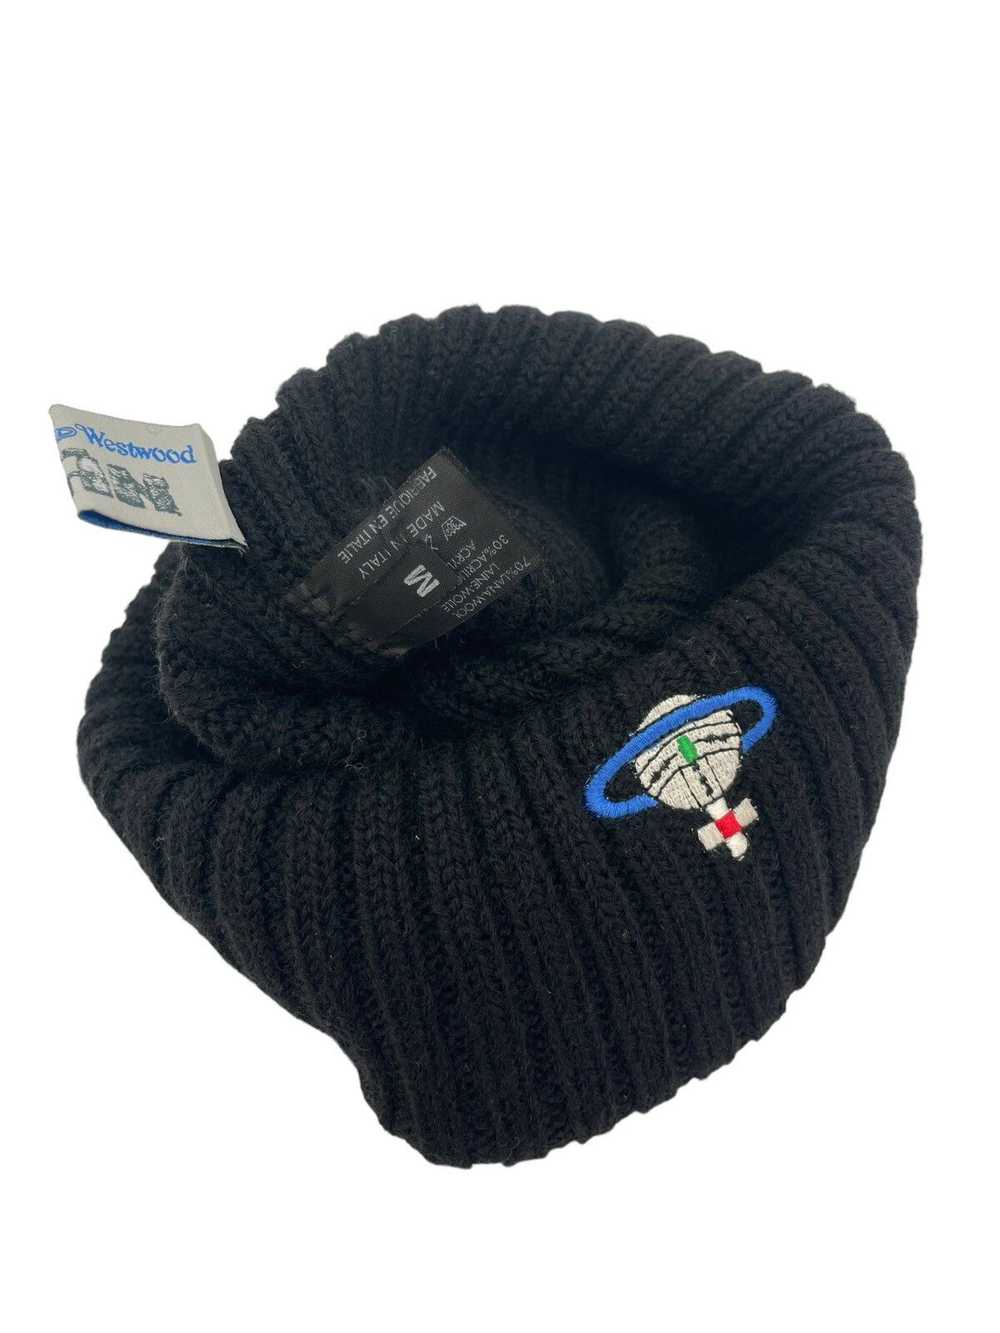 Vivienne Westwood Wool Knit Orb Hat - image 4